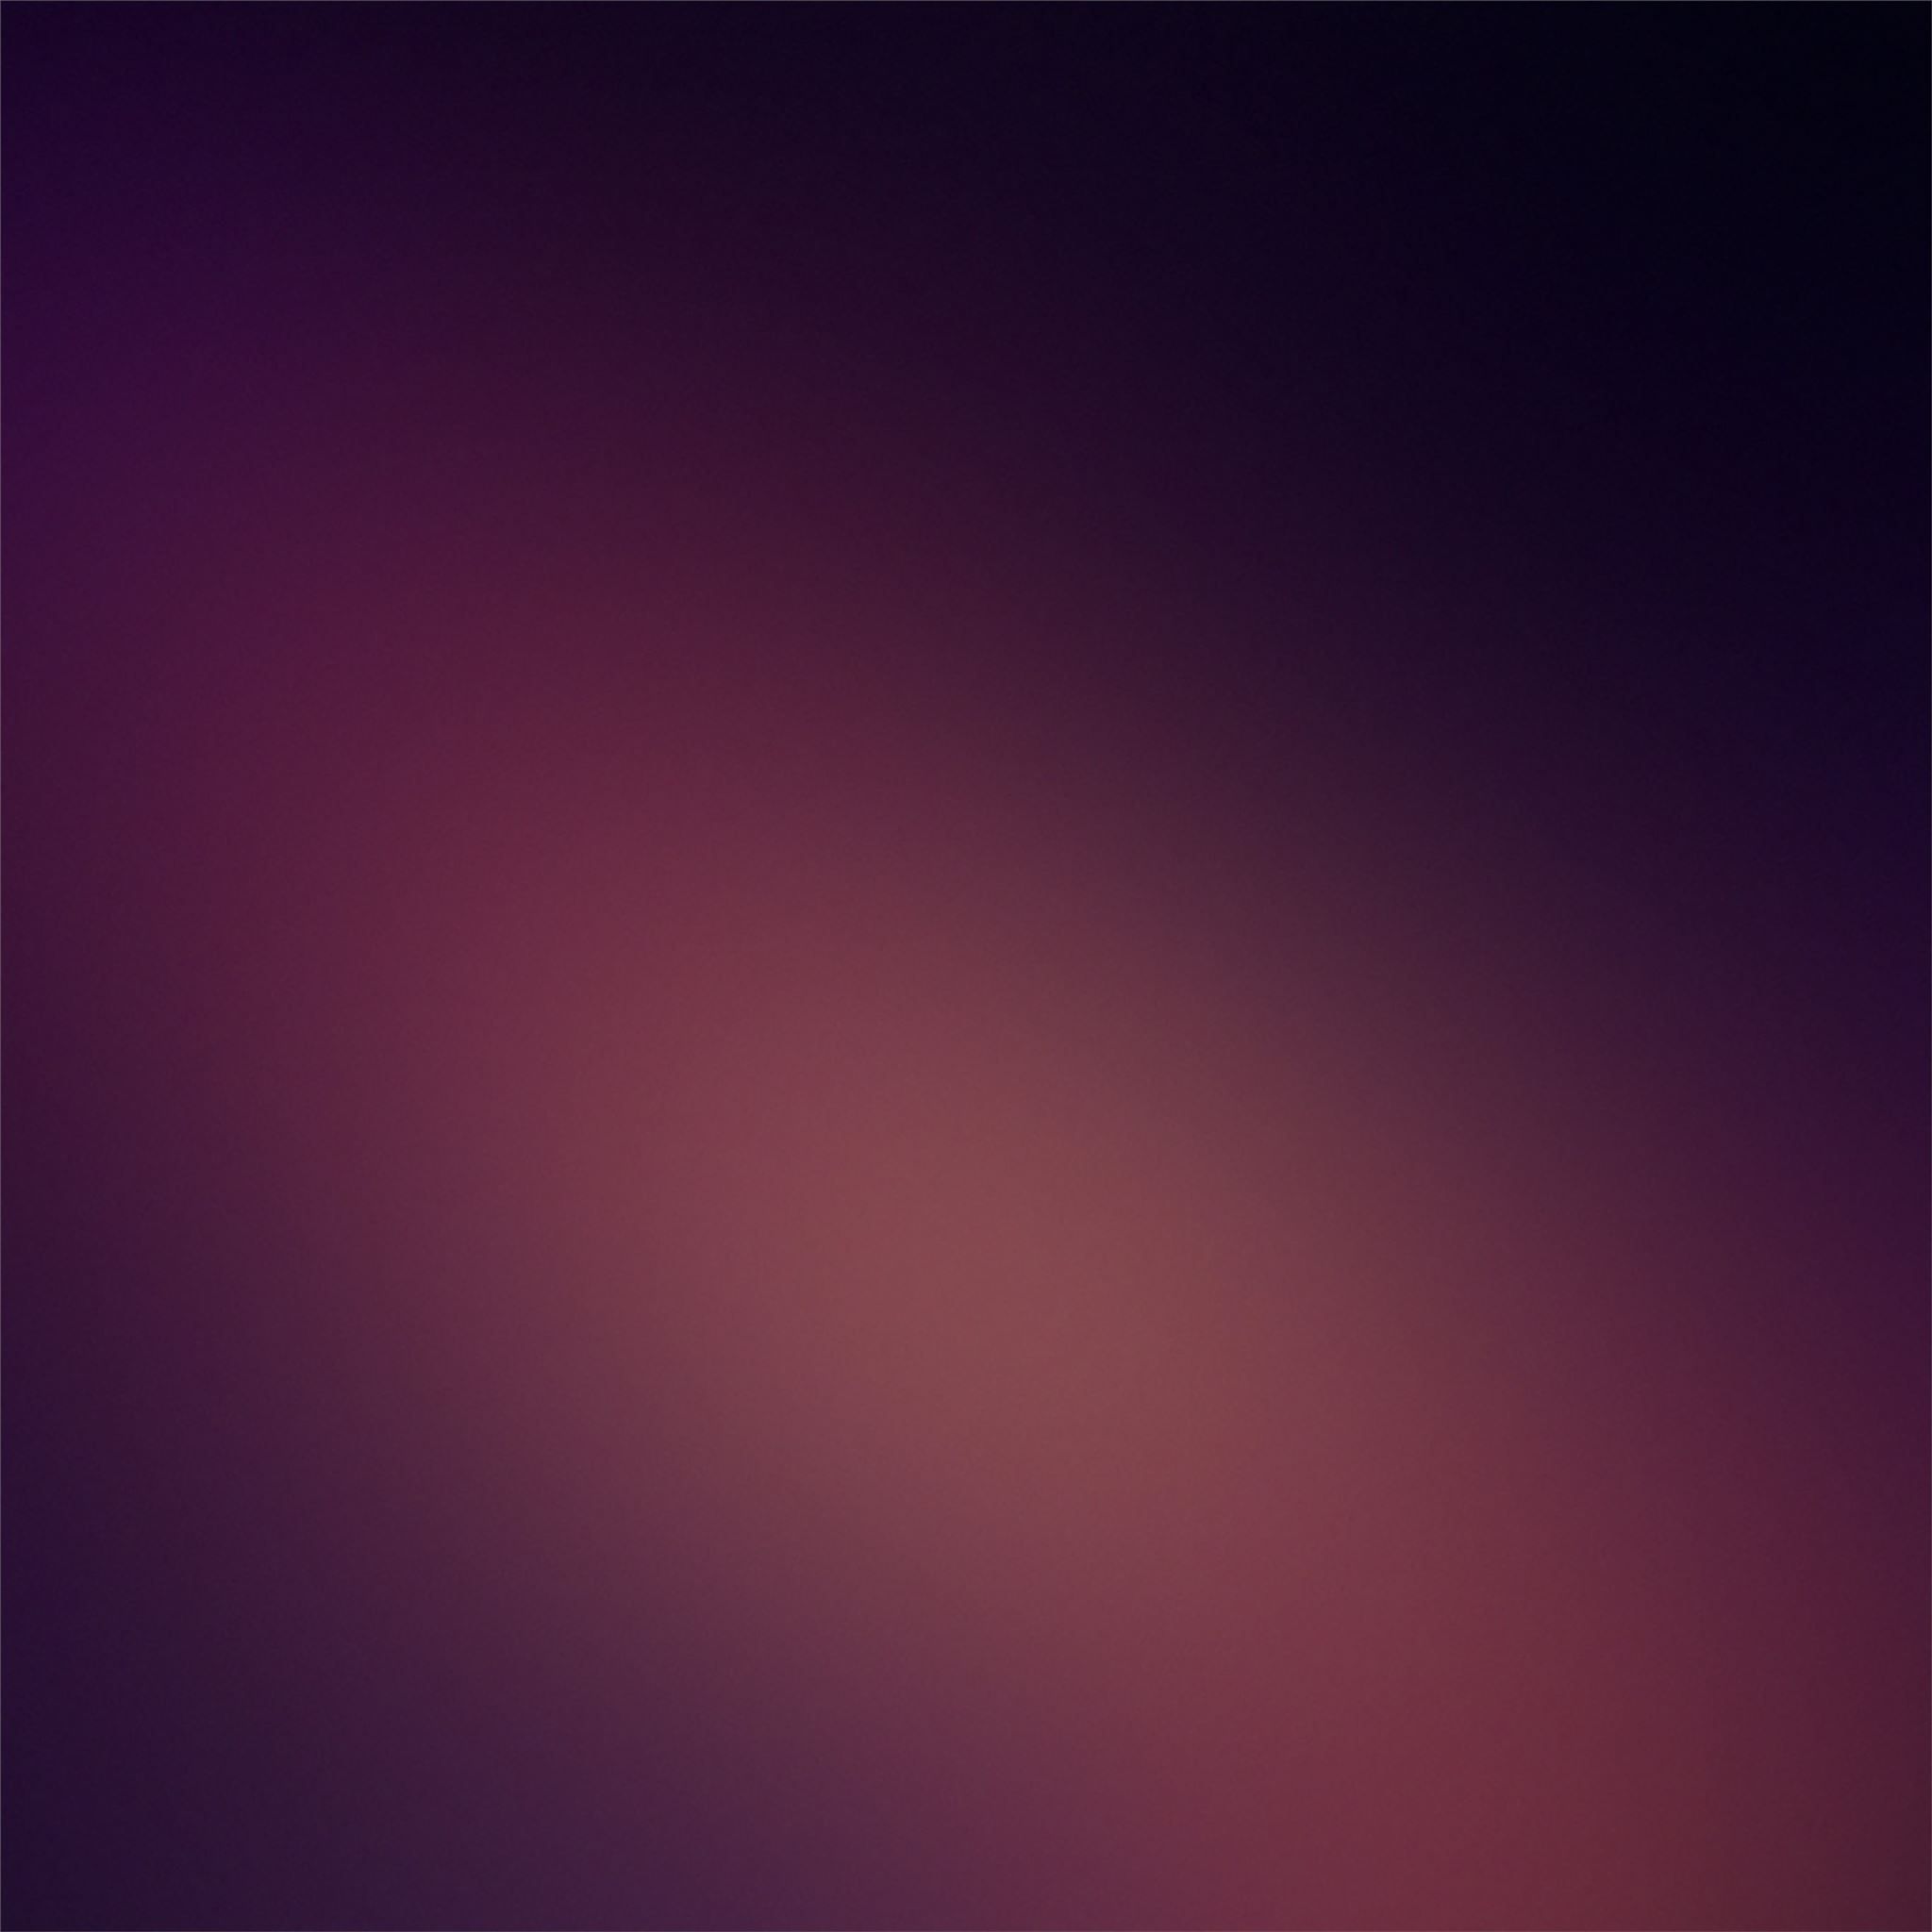 dark minimalist blur 4k iPad Wallpaper Free Download